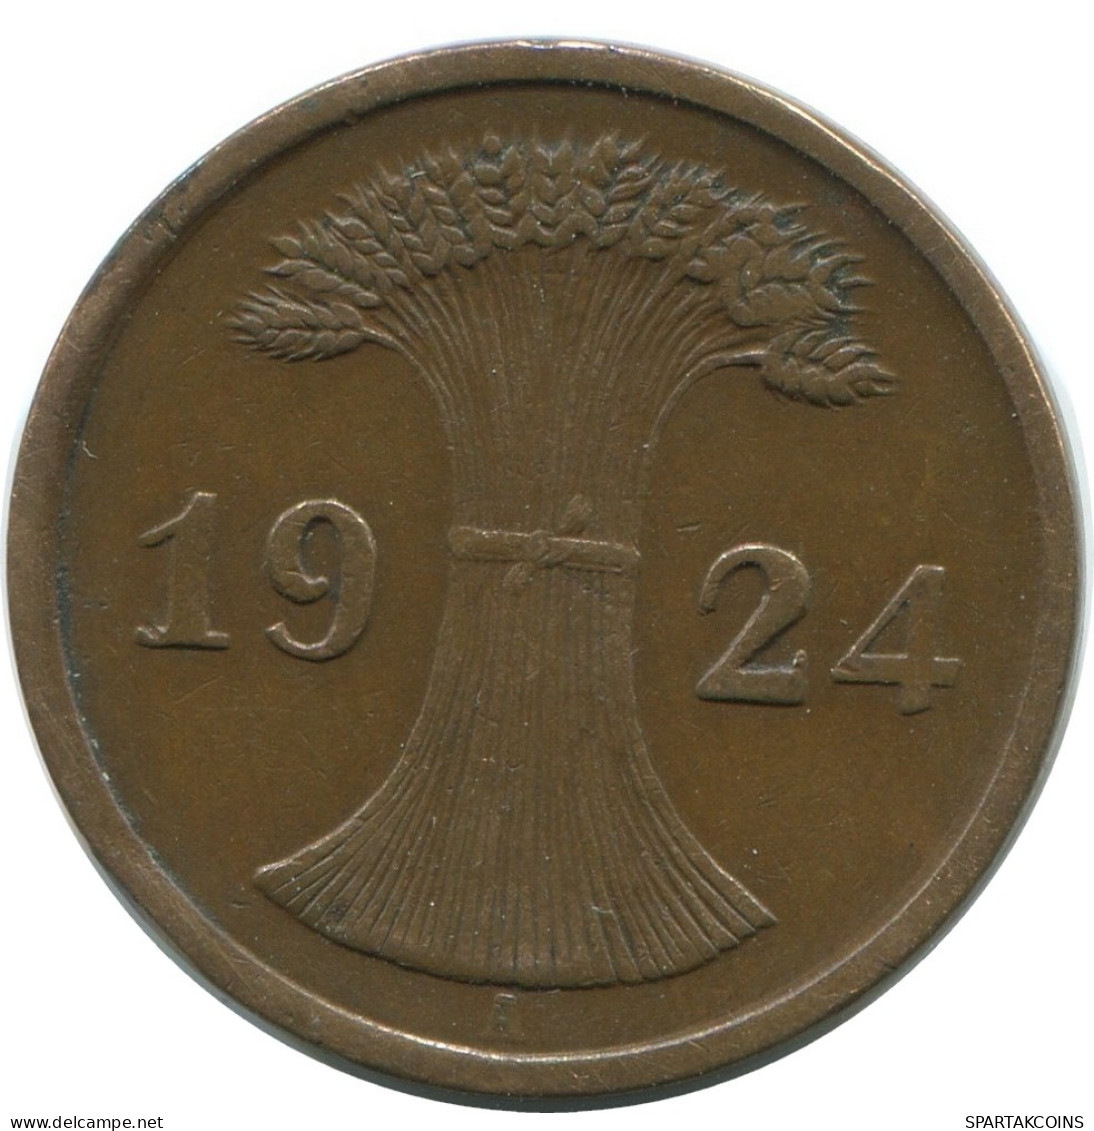 2 RENTENPFENNIG 1924 A GERMANY Coin #AD486.9.U - 2 Rentenpfennig & 2 Reichspfennig